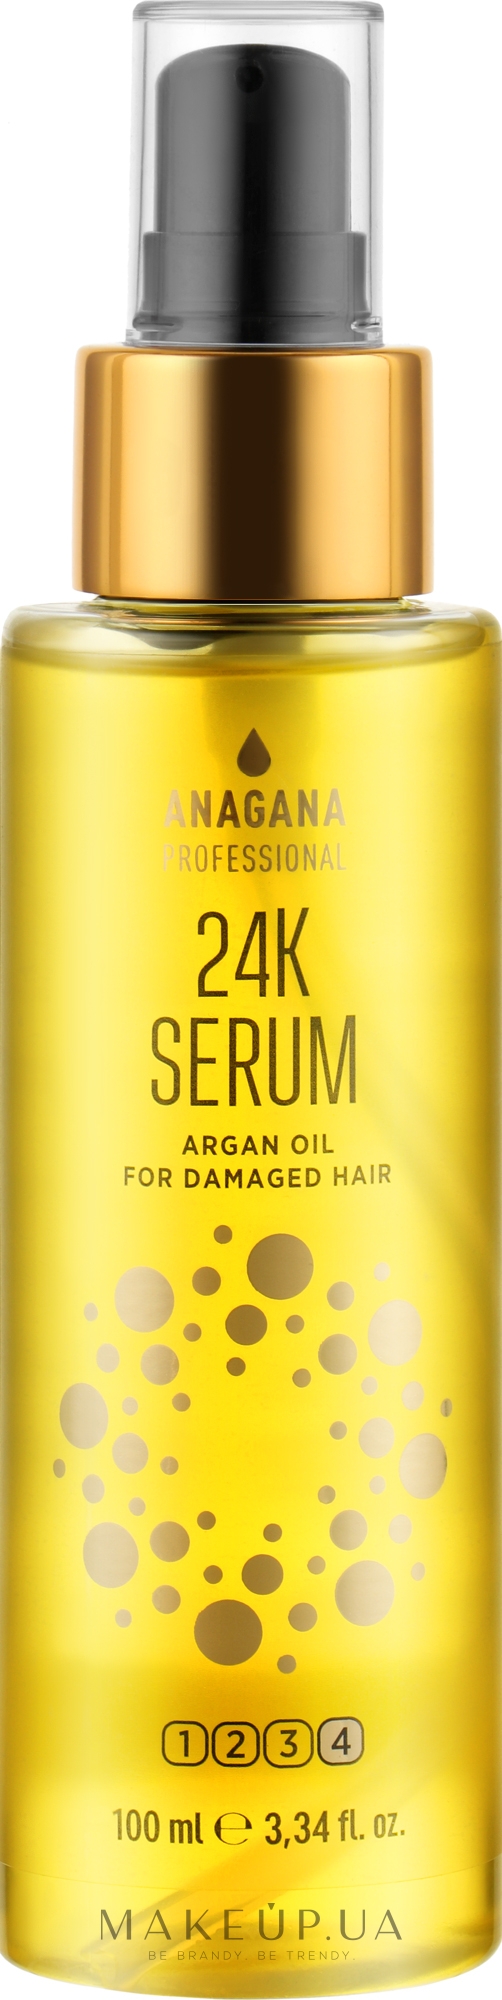 Флюїд з олією арганії для пошкодженого волосся - Anagana Professional 24K Argan Oil Serum — фото 100ml